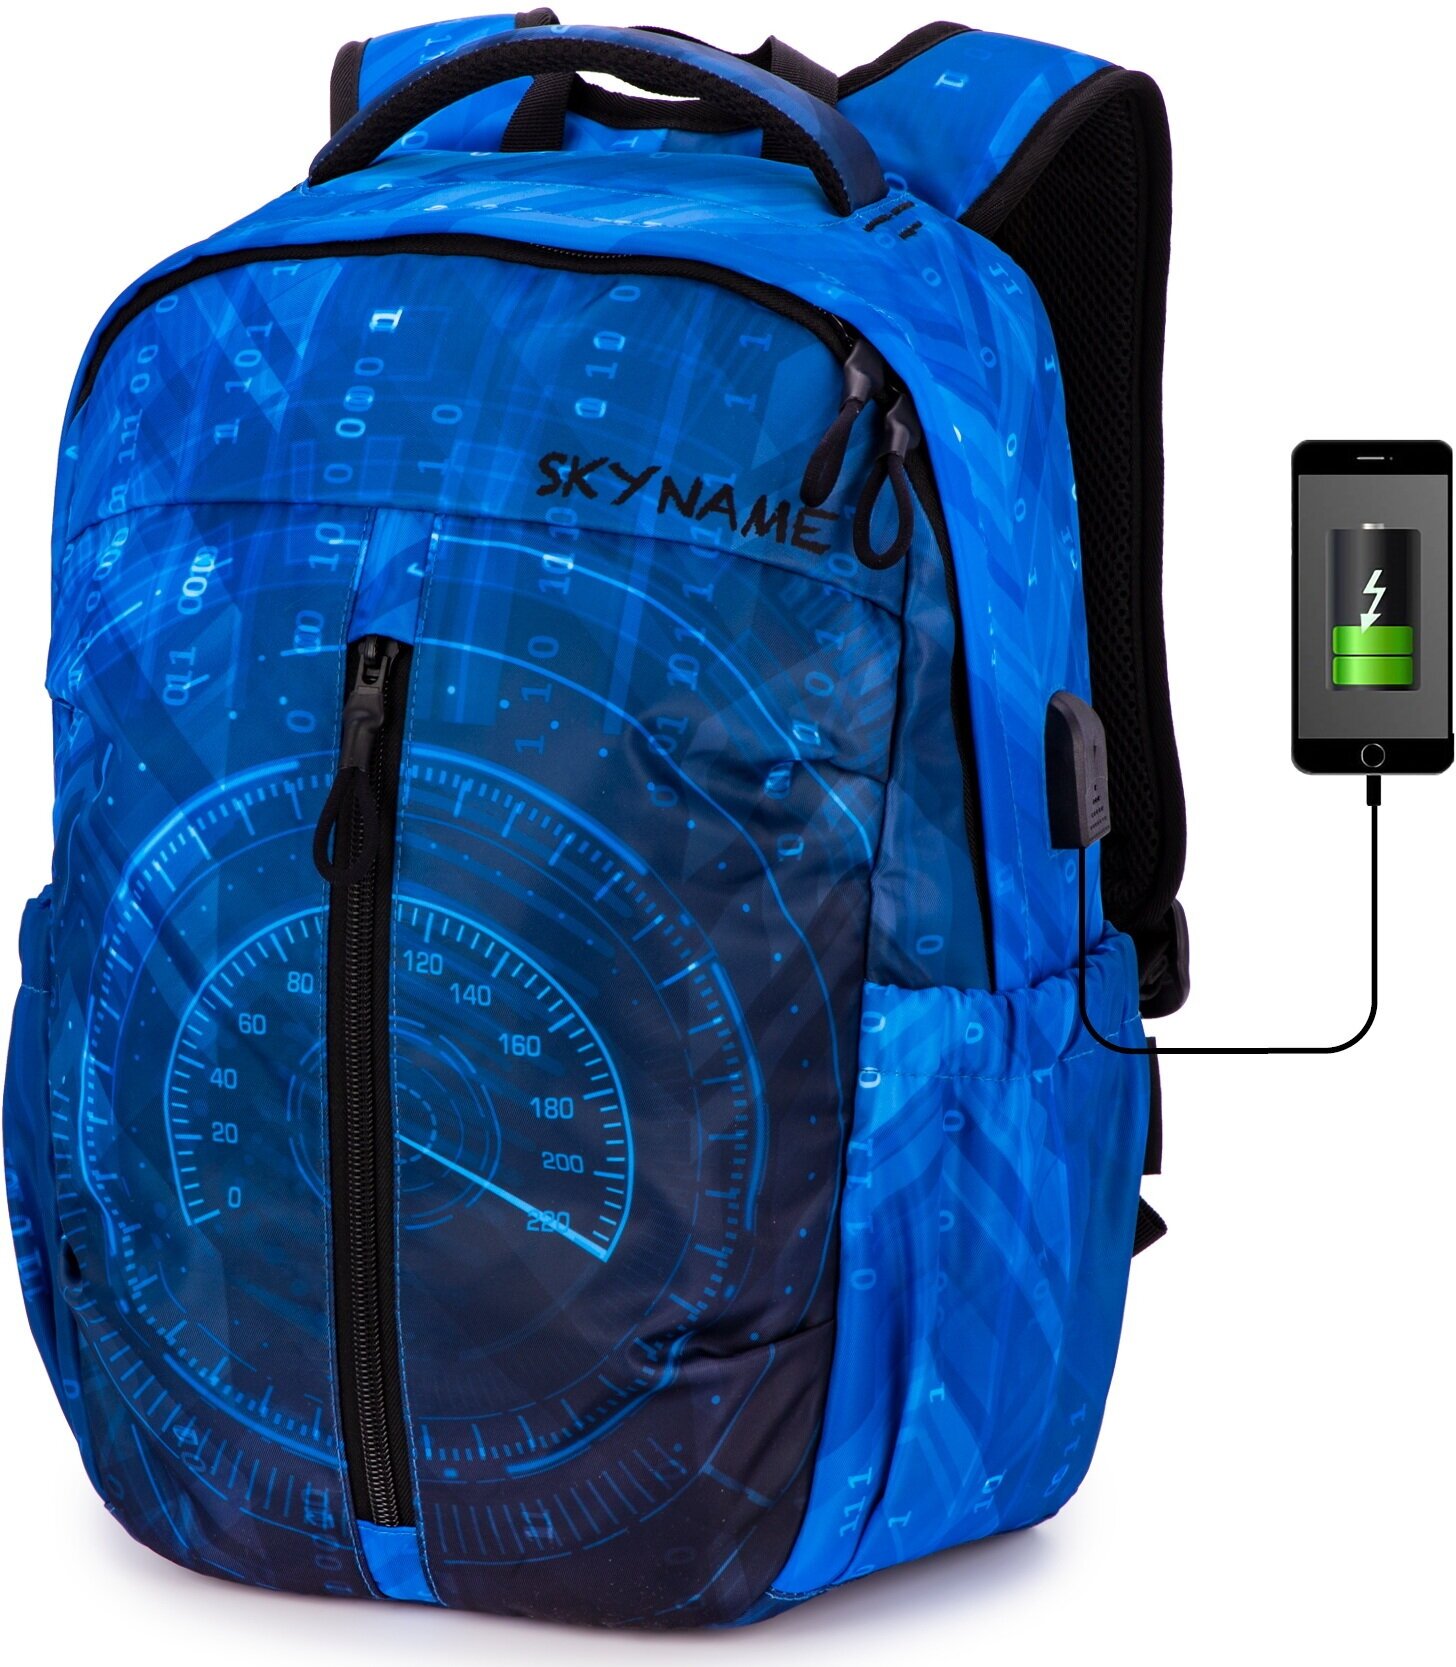 Рюкзак школьный для подростка, 20л, А4 для ноутбука, черный городской для мальчика, SkyName (СкайНейм), с анатомической спинкой и USB-слотом